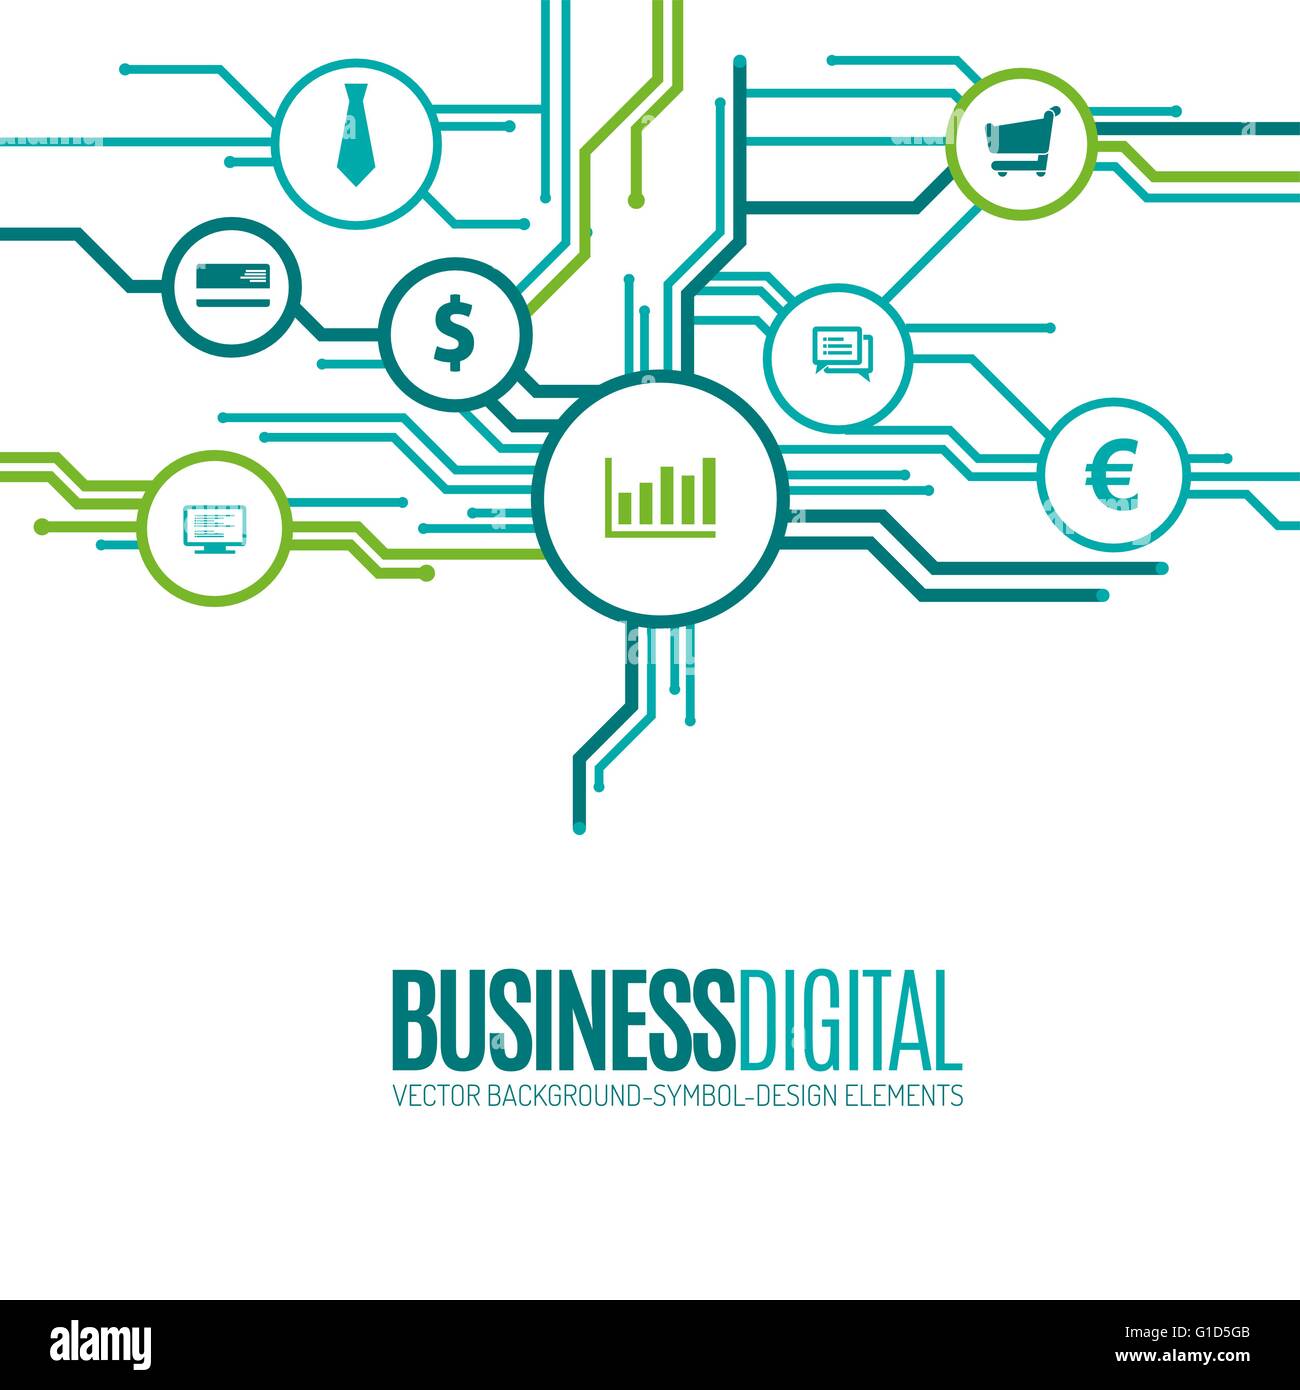 Business Symbole als digitale Technologie Layout. Technologie Vektor Elemente für Infografiken, Designs oder Flyer. Stock Vektor